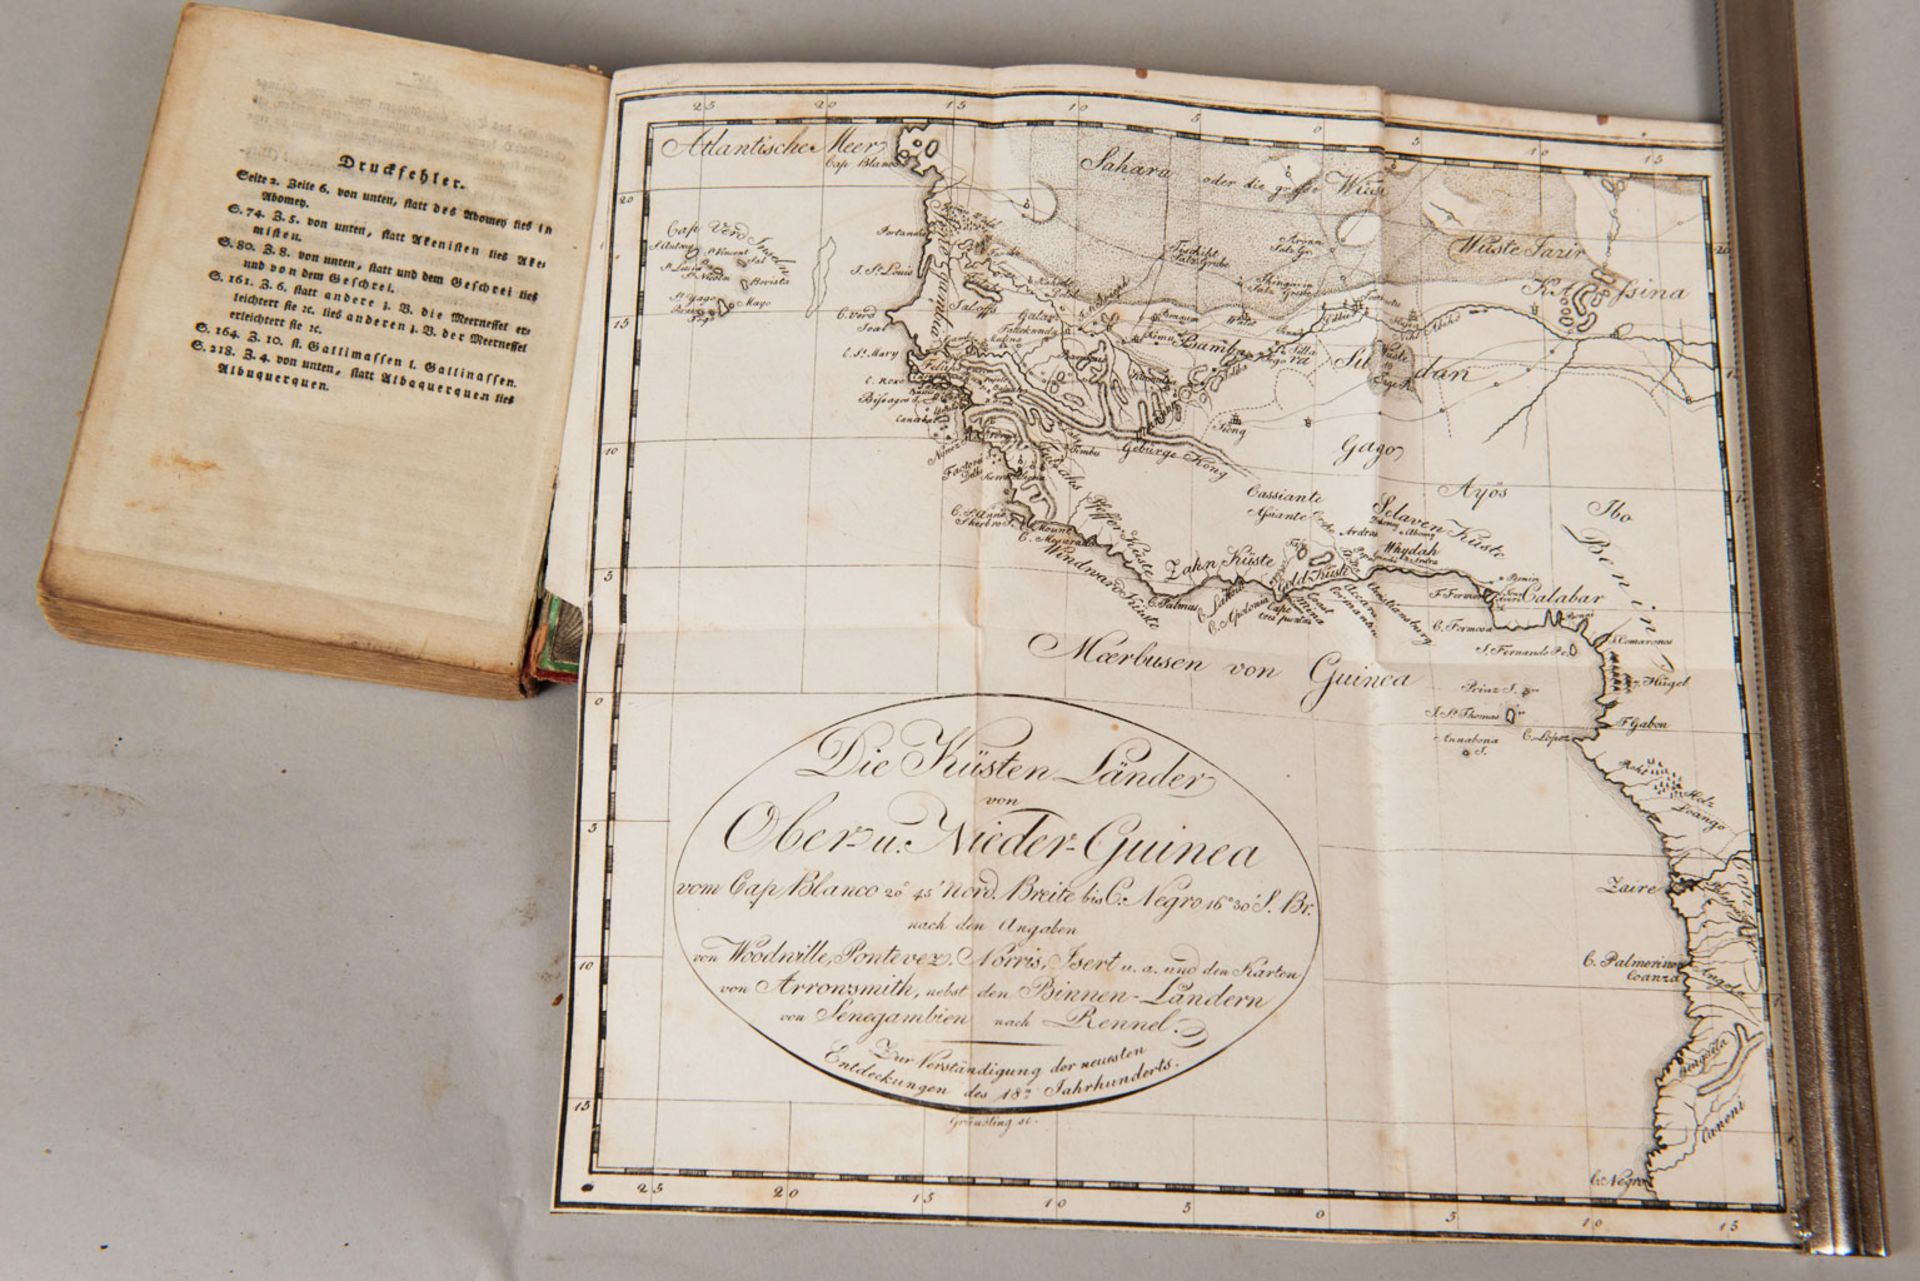 Taschenbuch der Reisen oder unterhaltsame Darstellung der Entdeckungen des 18. Jahrhunderts - Image 3 of 3